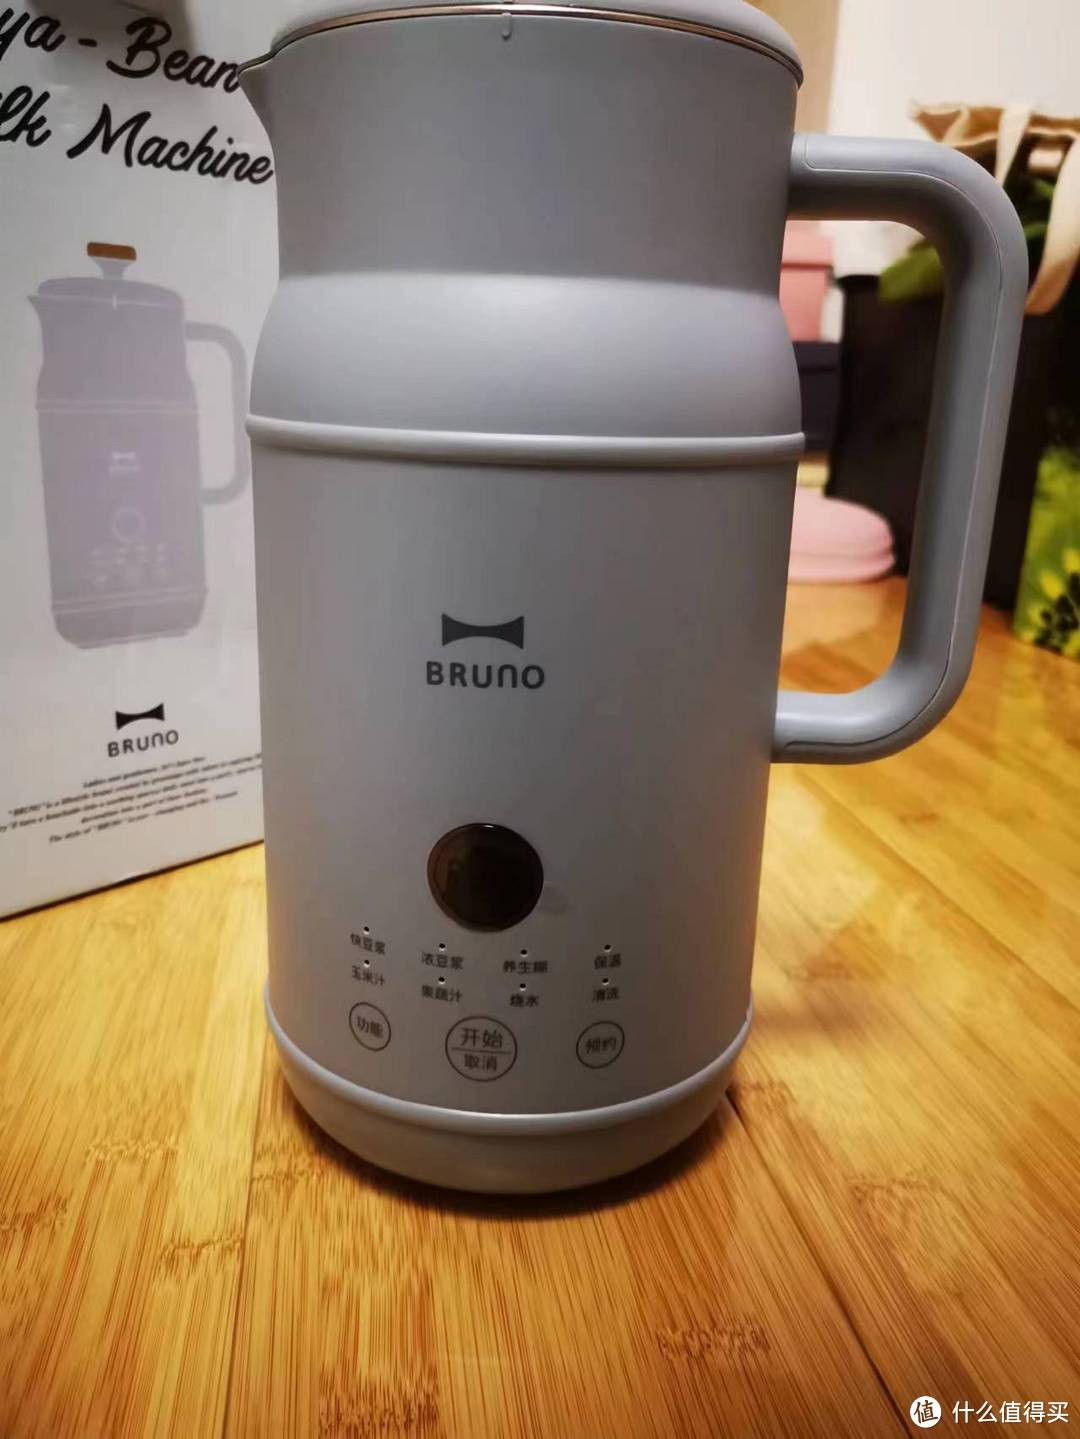 BRUNO豆浆机--早上一杯豆浆，健康生活每一天